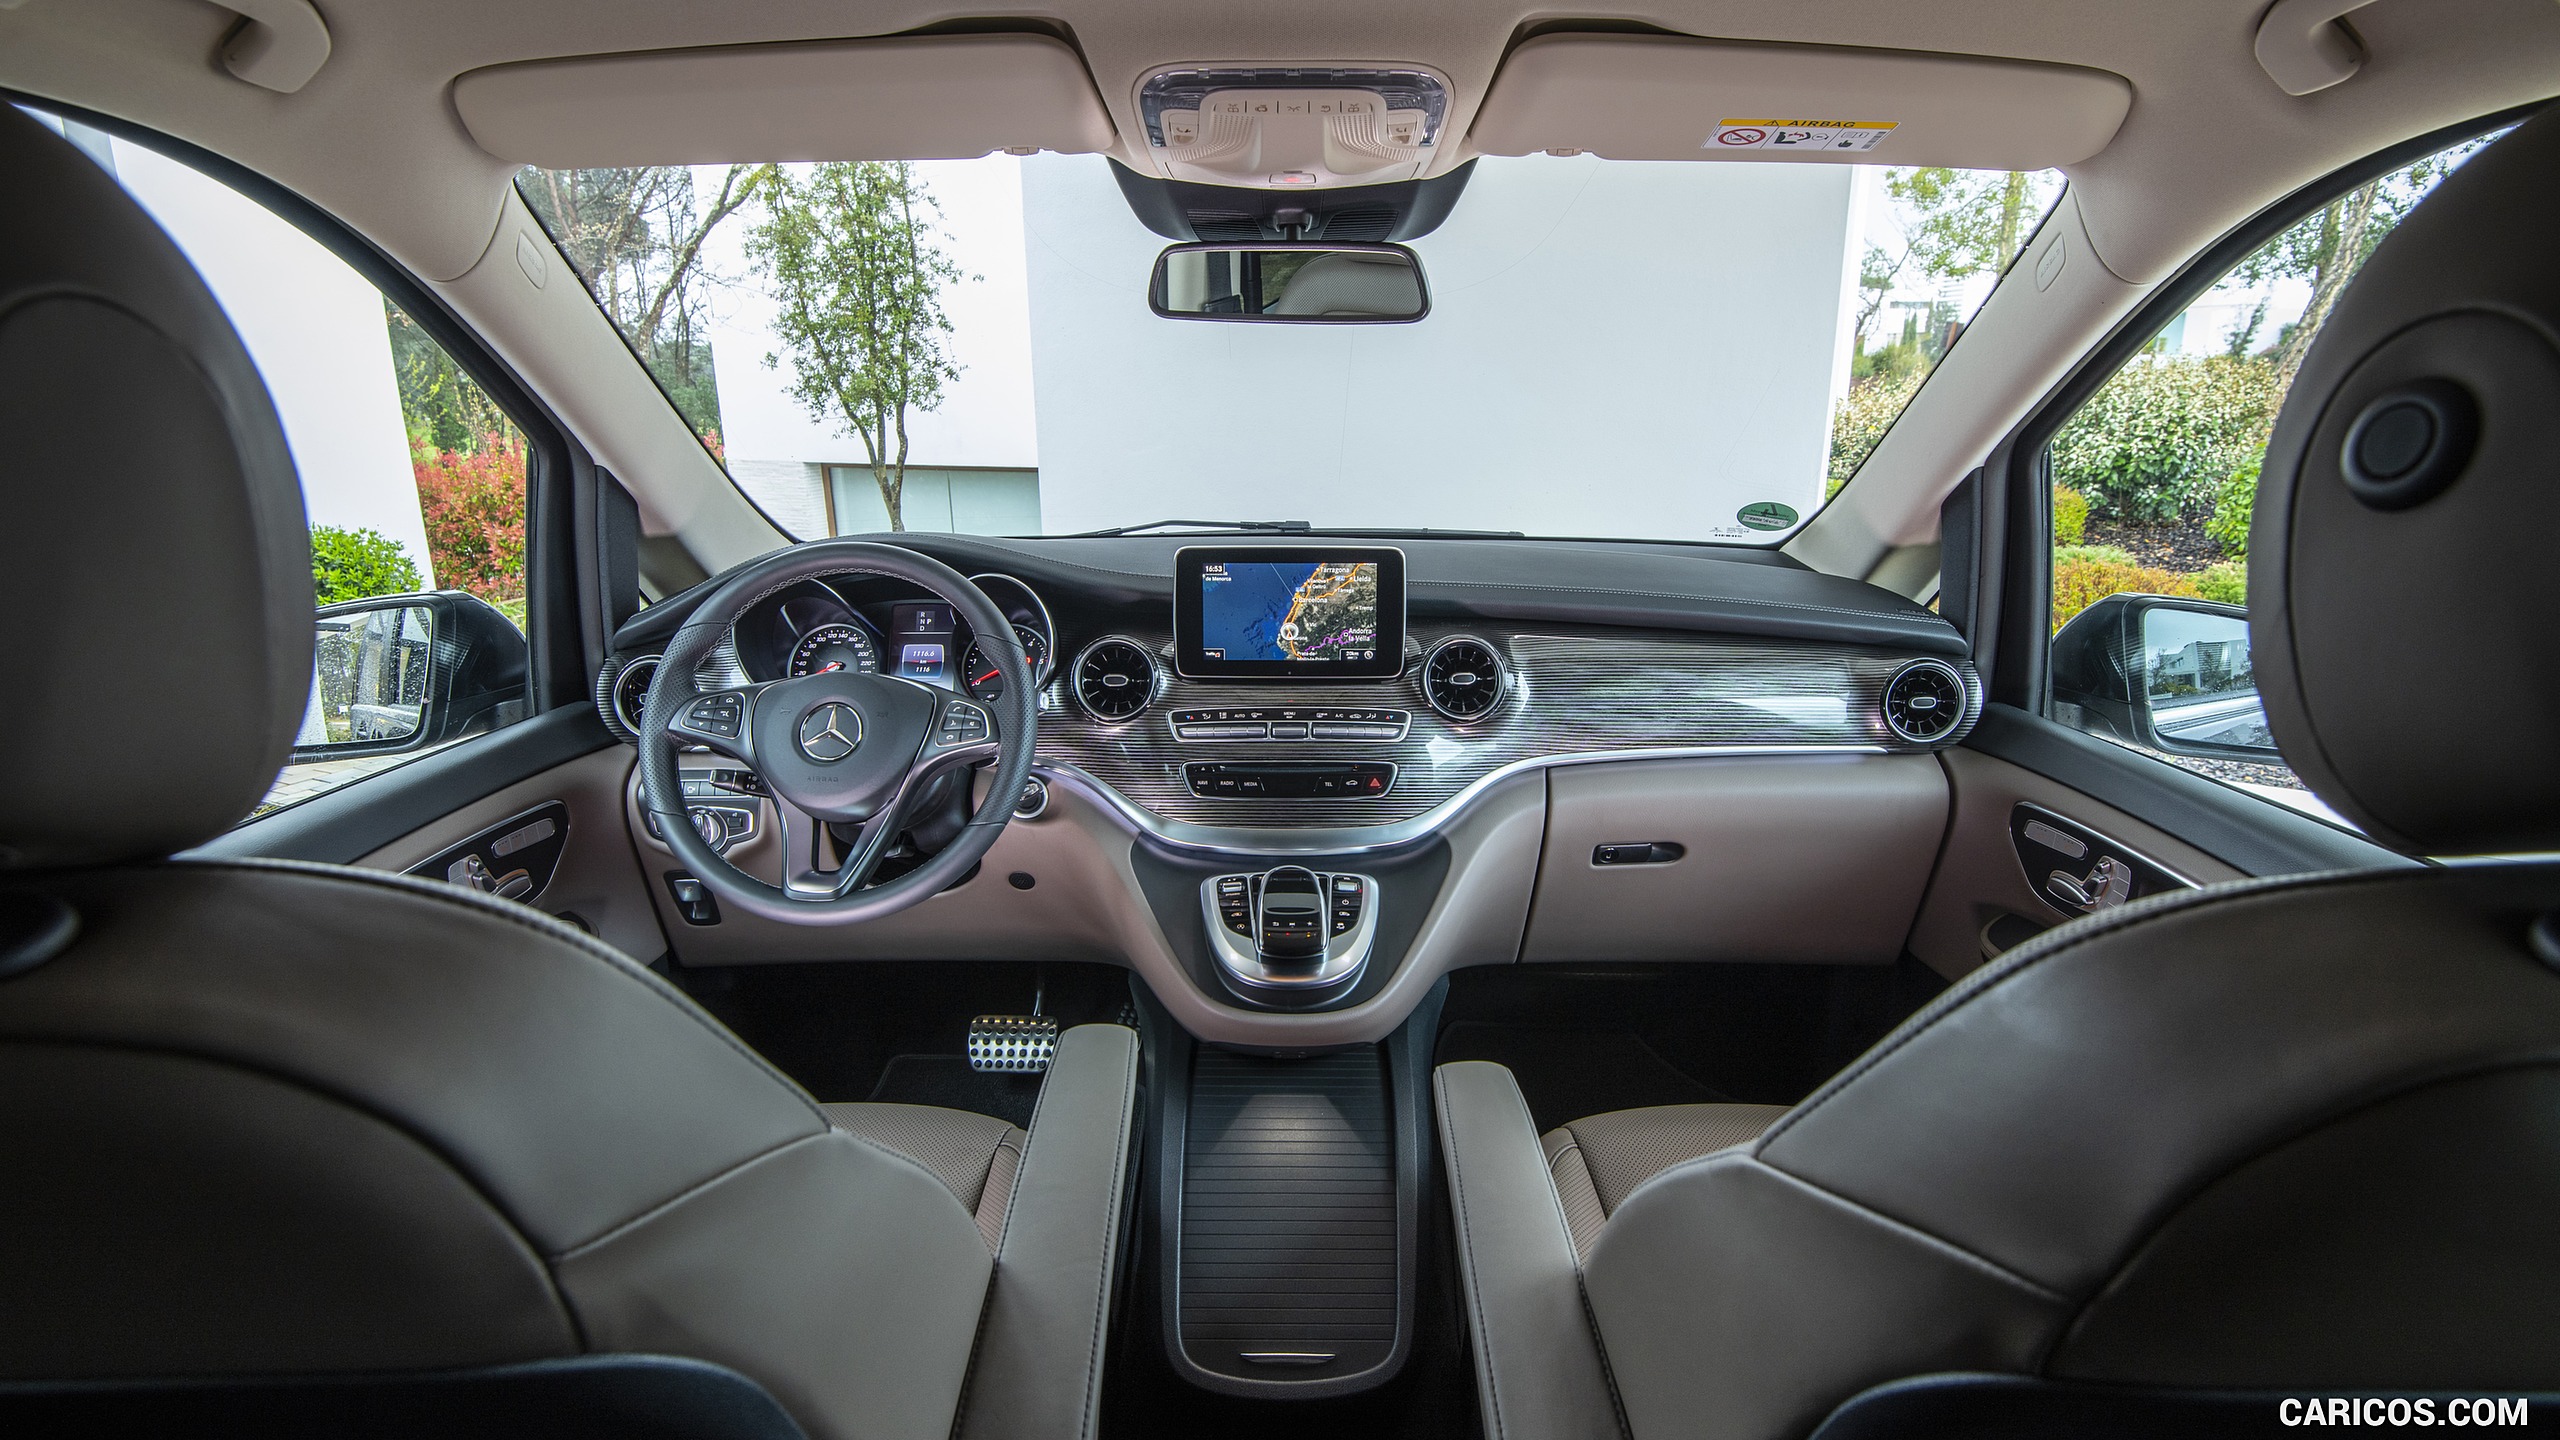 2019 Mercedes-Benz V-Class V300d - Interior, Cockpit, #142 of 216